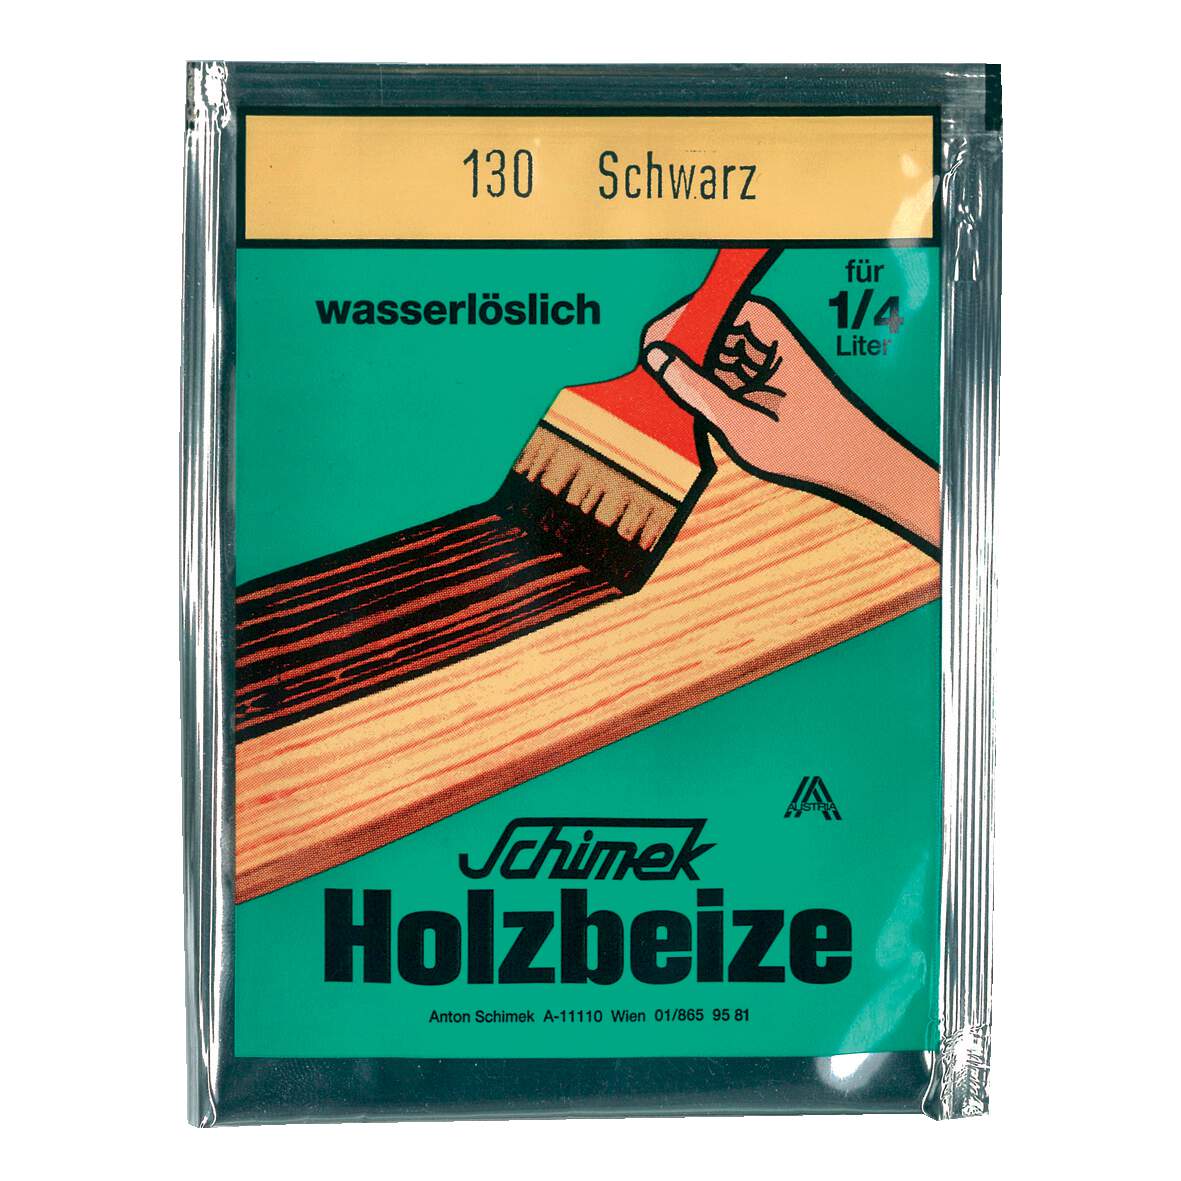 1216637 - Holzbeize wasserlöslich